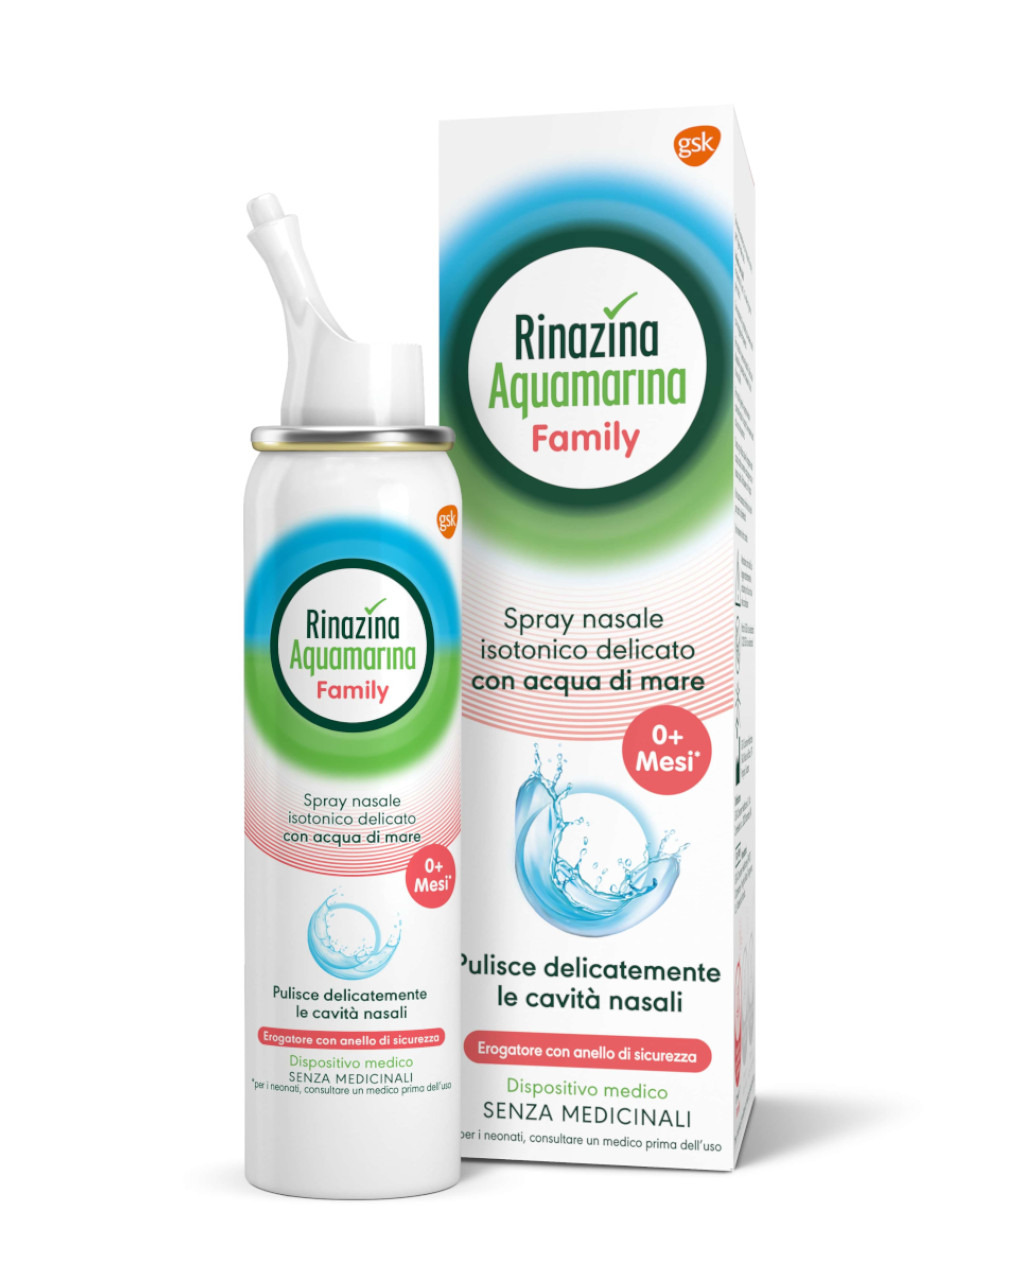 Aquamarina spray nasale isotonico - rinazina